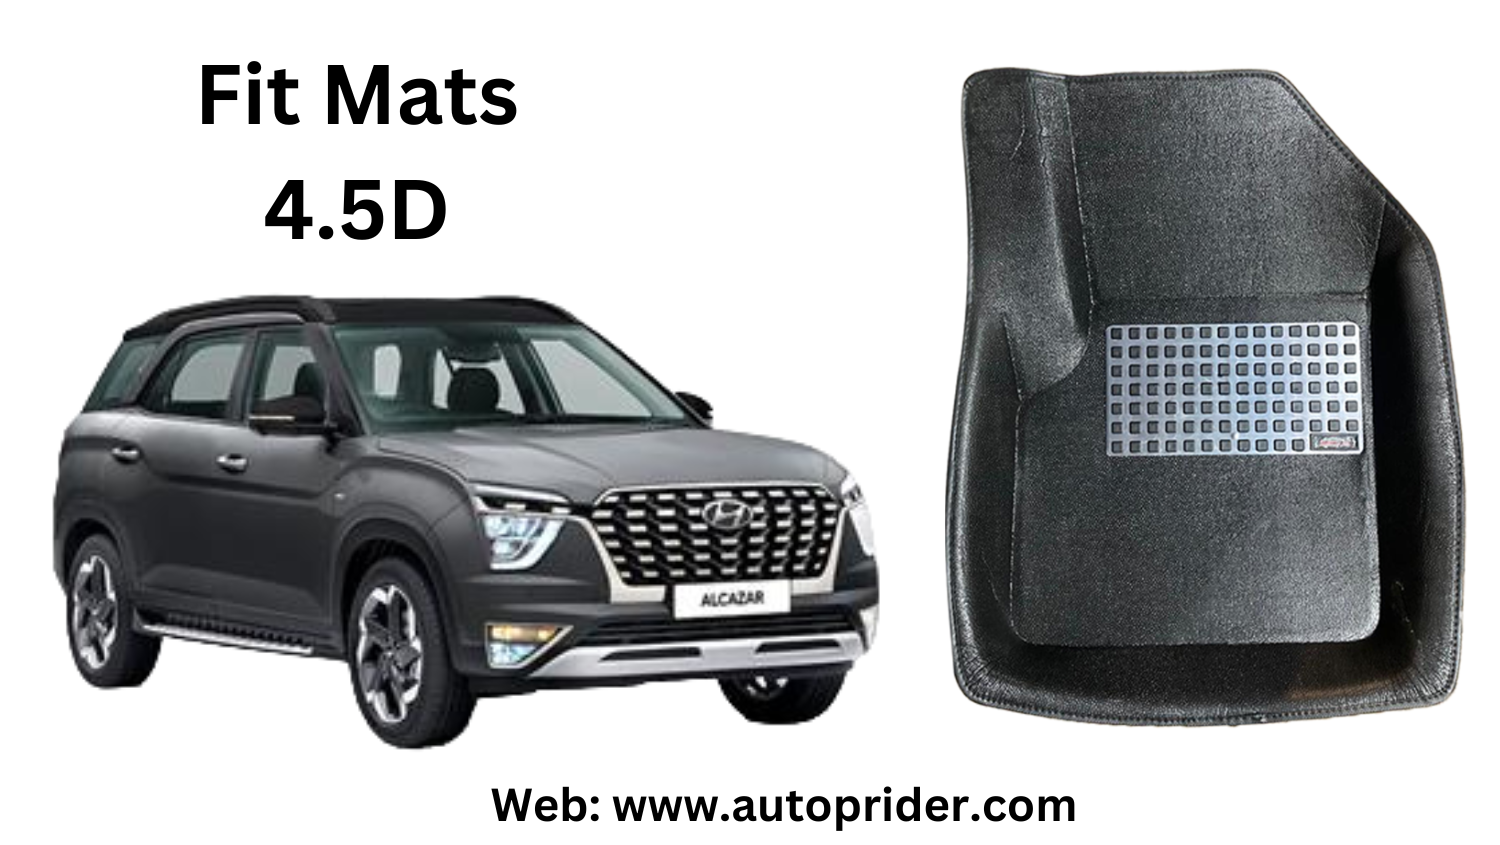 Autoprider | Fit Mats 4.5D Economy Car Mats for Hyundai Alcazar